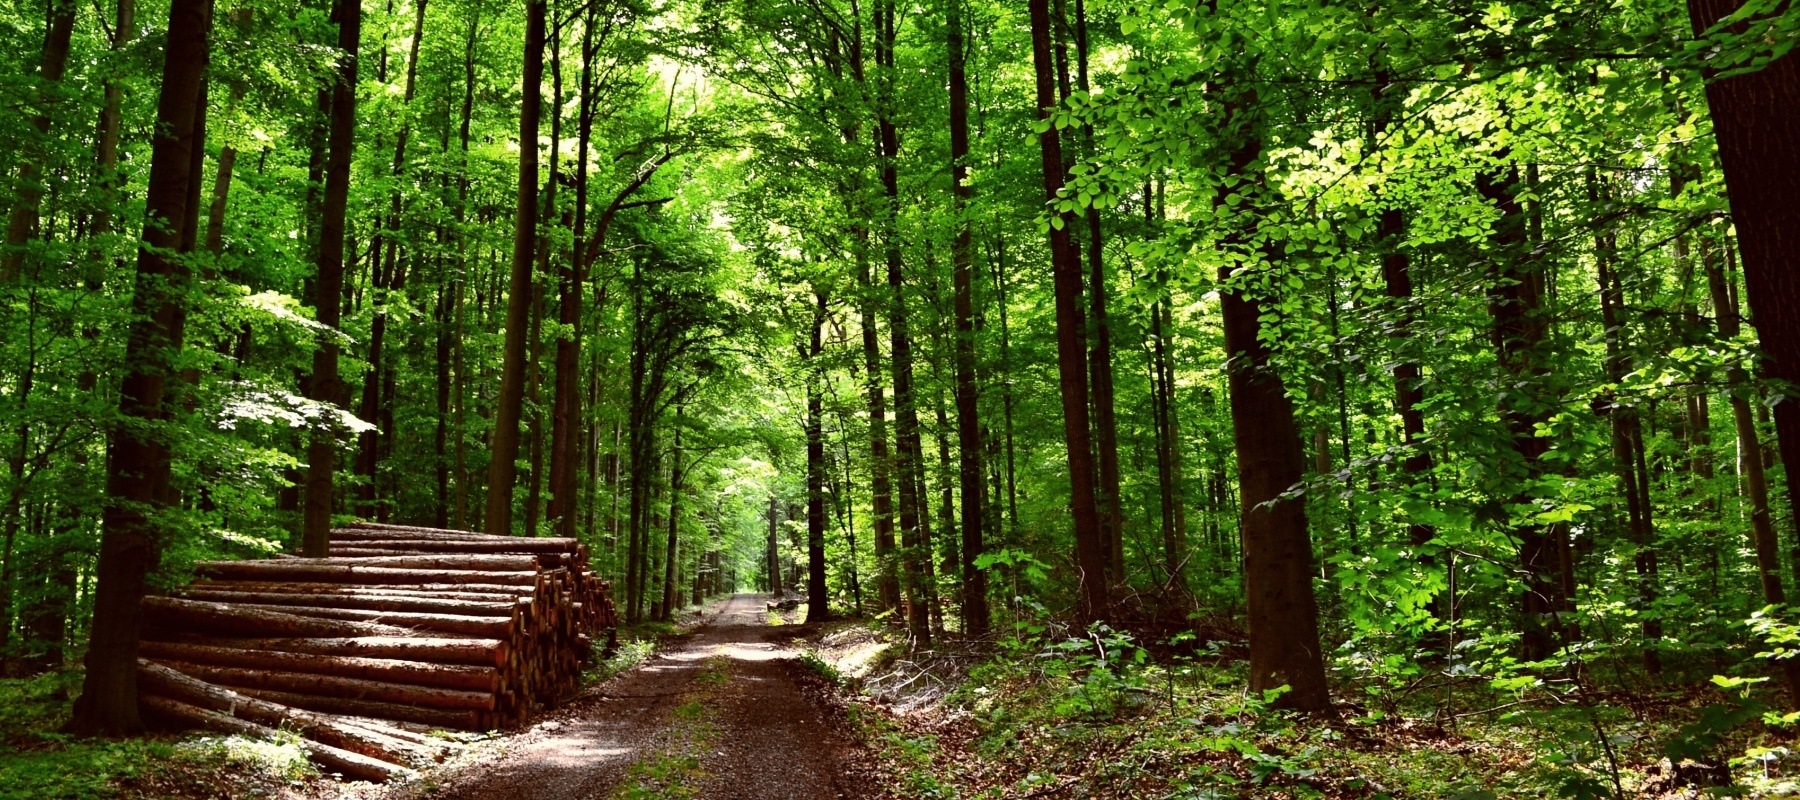 Klettersitz als Steuerungsinstrument der Wiederbewaldung